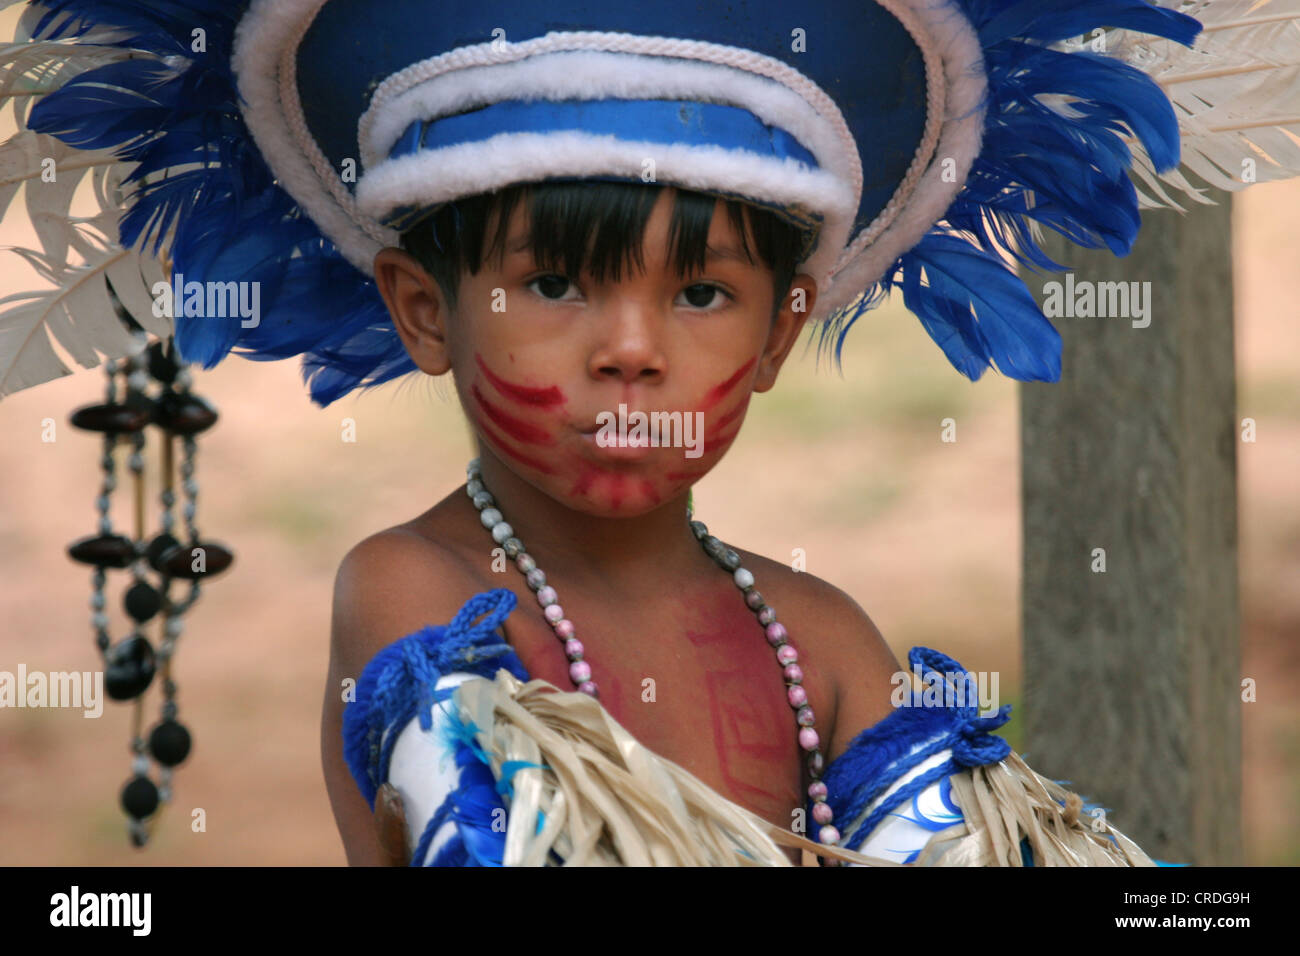 Kleiner Junge gekleidet in typischer native zeremonielle Kleidung aus dem Amazonasgebiet von Brasilien Stockfoto